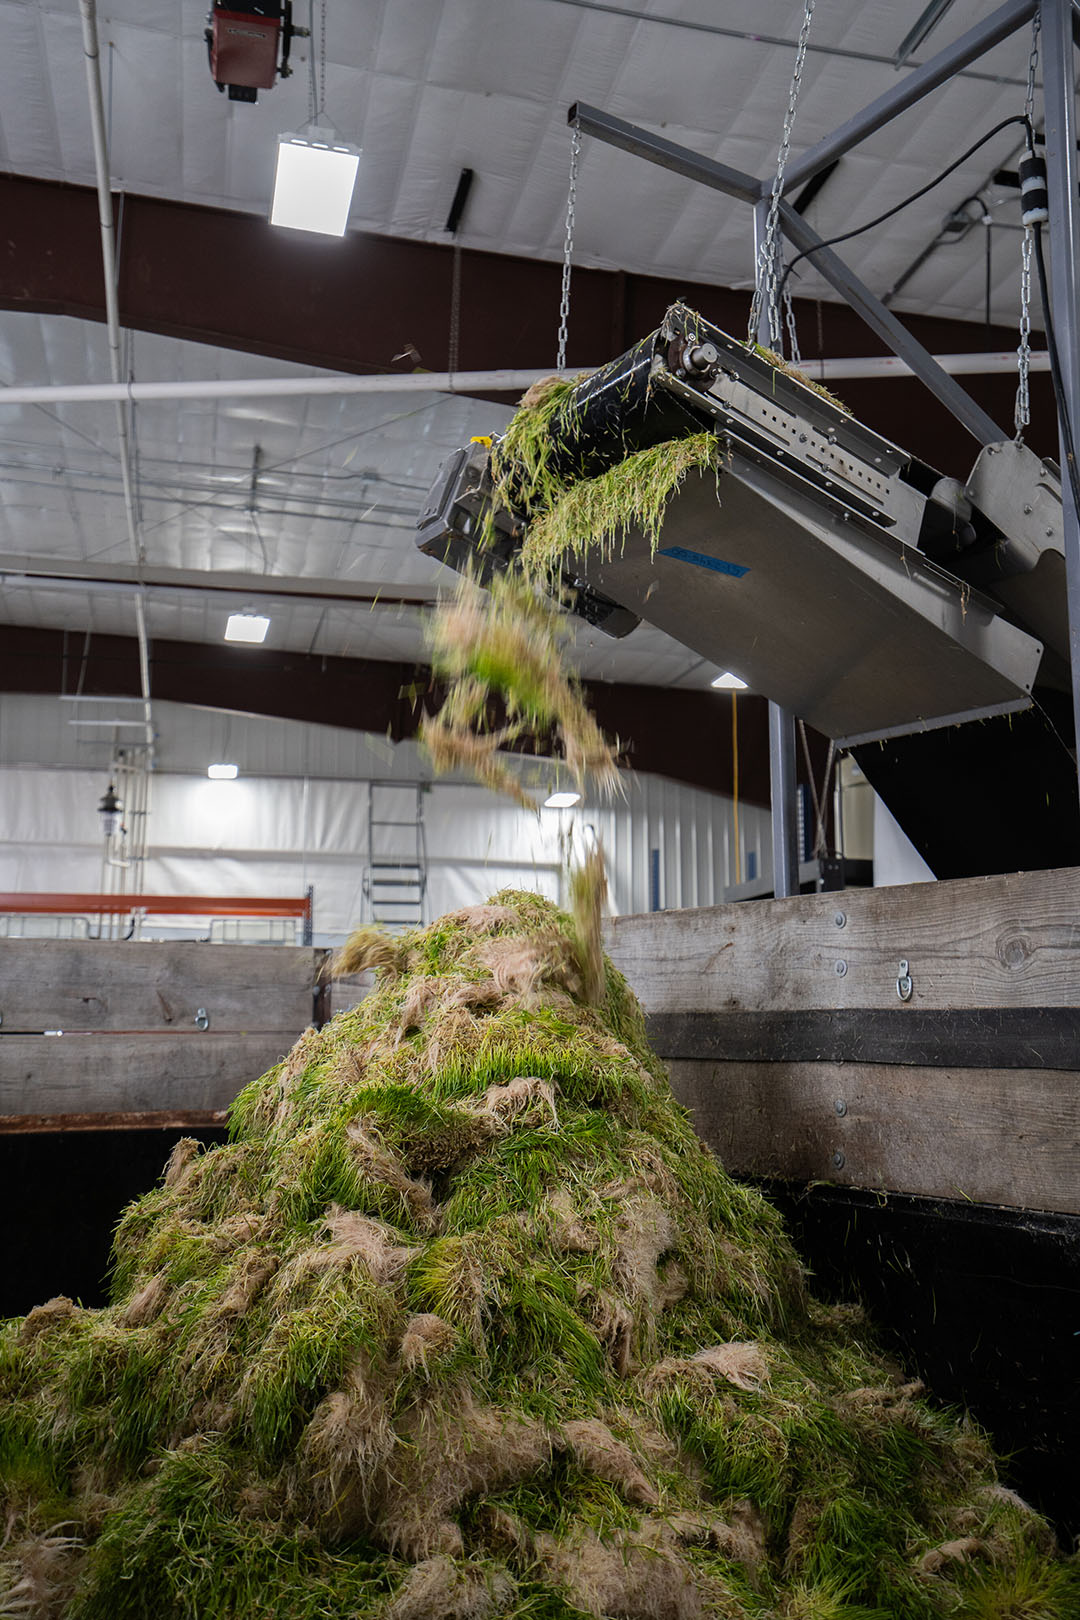 Una vez que está listo para la cosecha, el trigo o la cebada germinados salen de una cinta automatizada como una alfombra y se trituran, listos para ser añadidos a la ración de leche o carne. Foto: HydroGreen